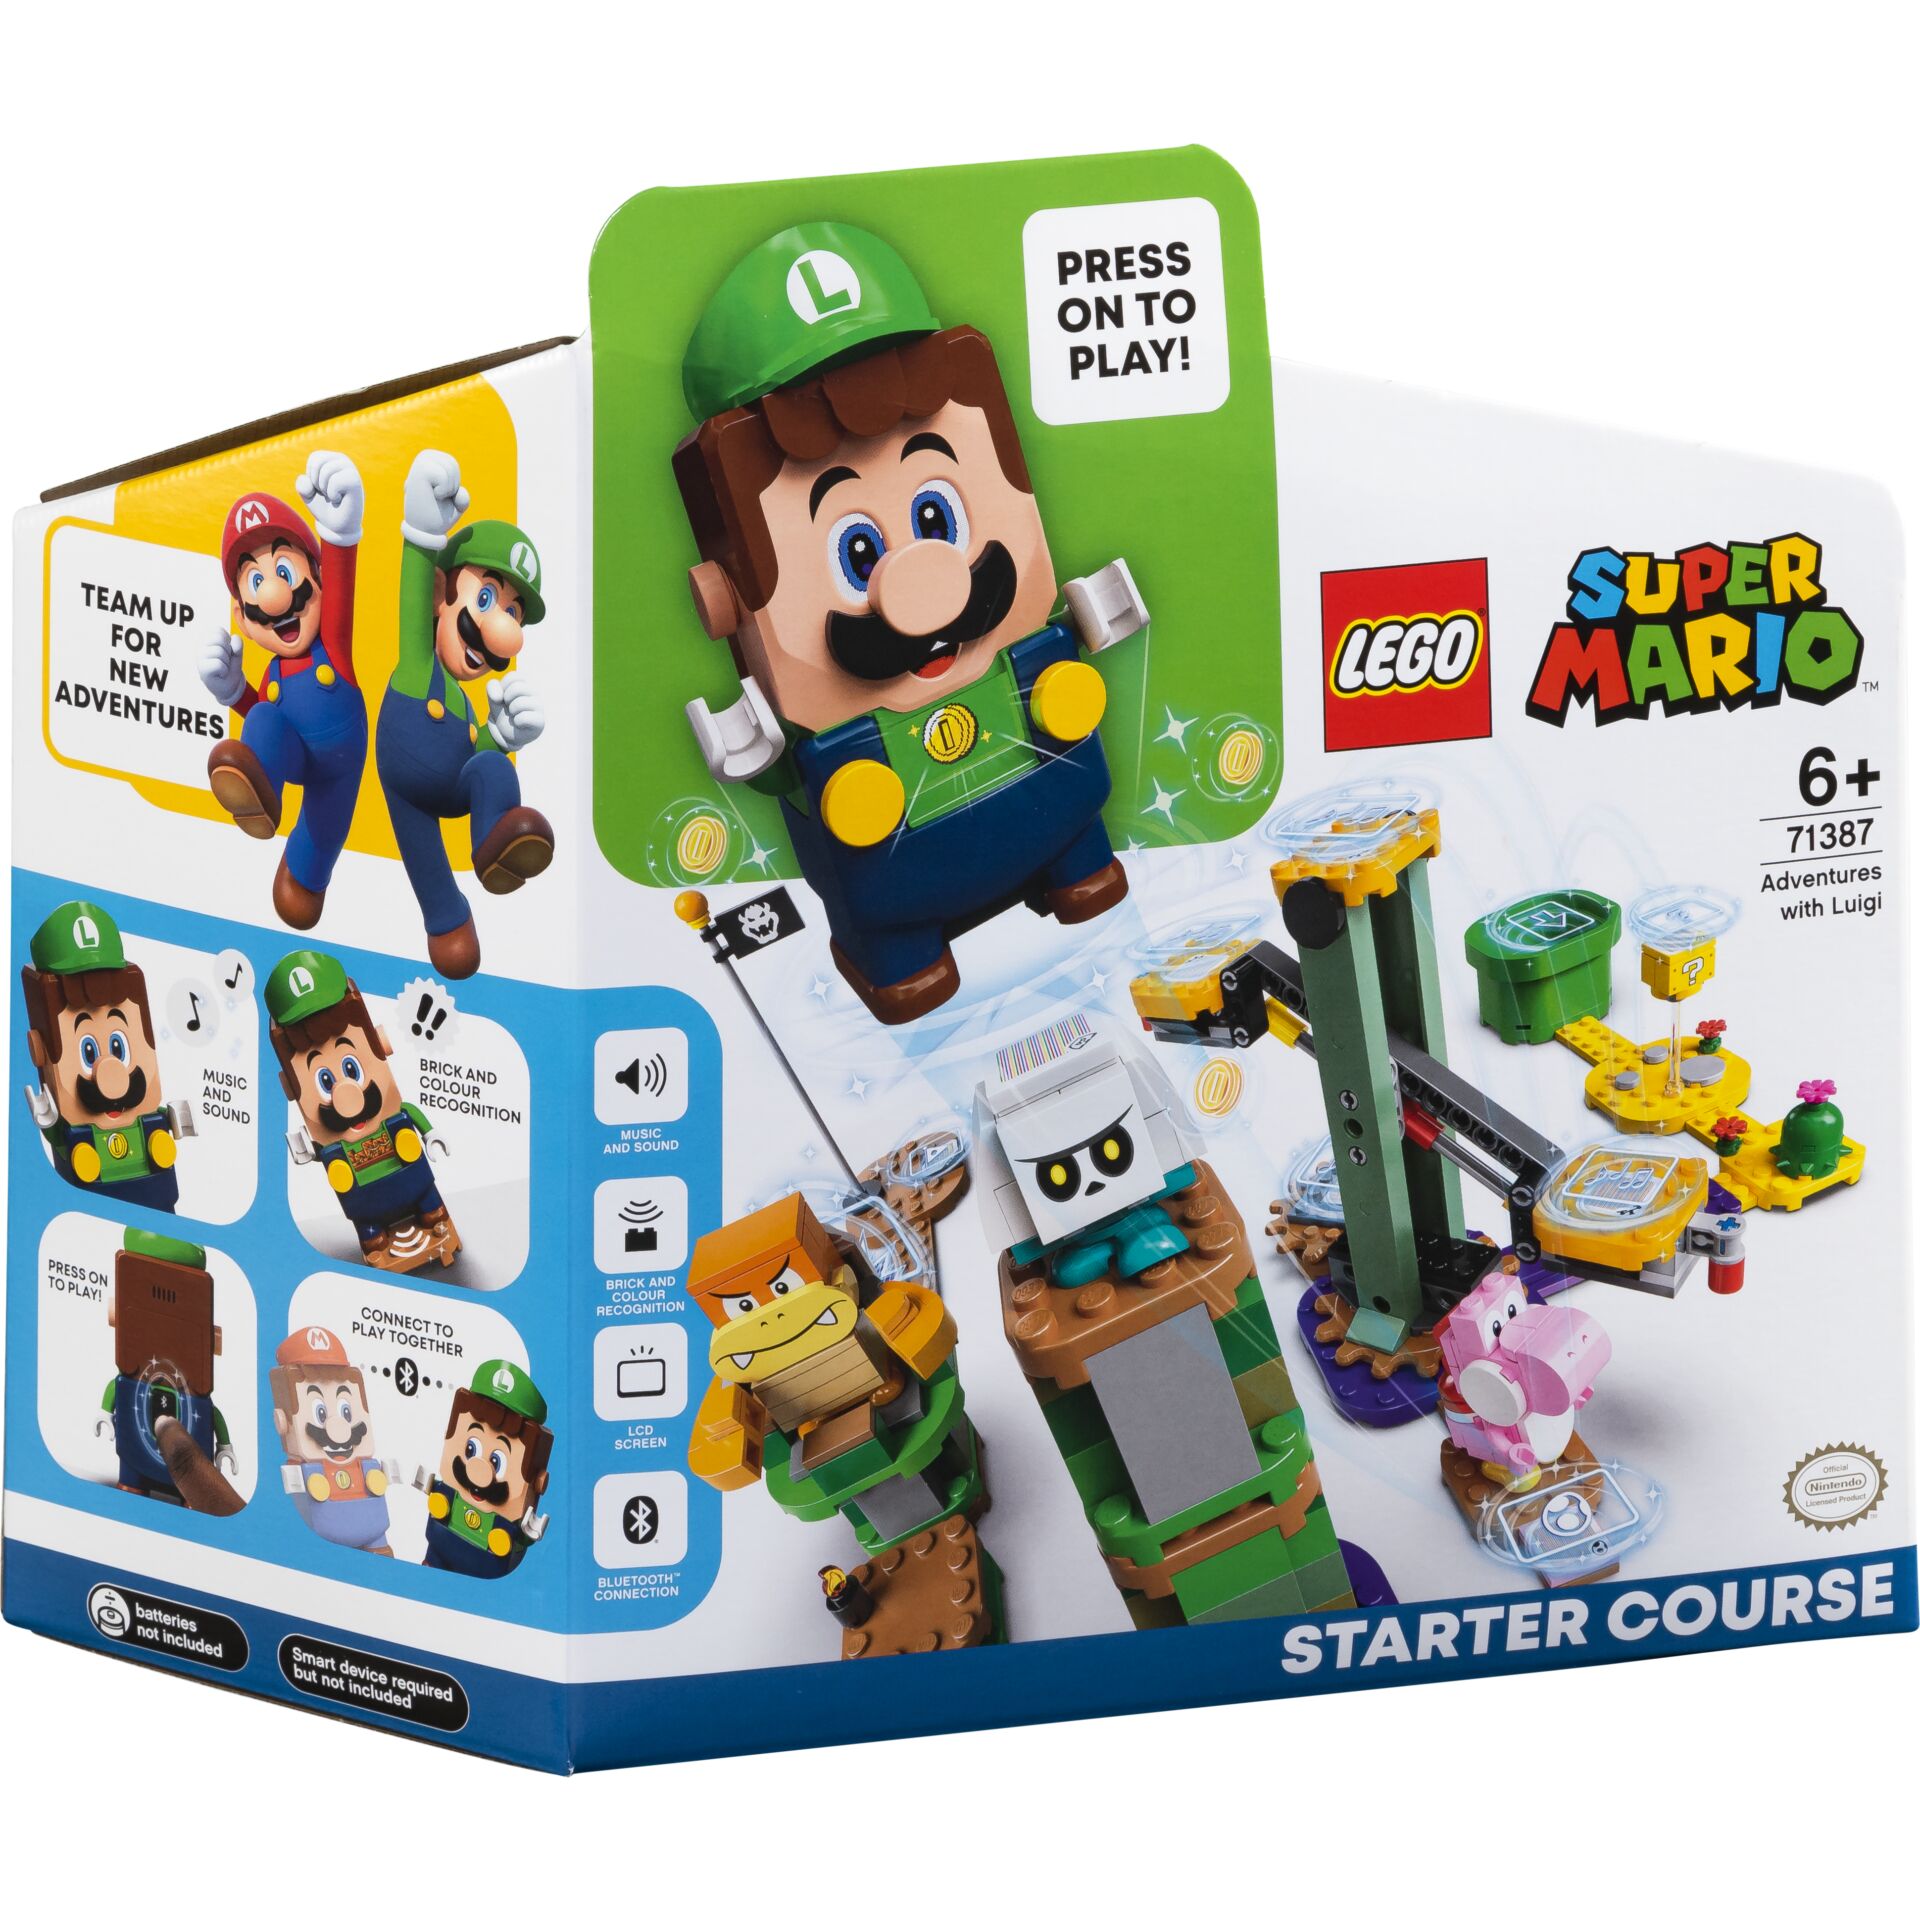 mit 71387 -S.M. Luigi -Lego | Toys/Spielzeug Starterset Abenteuer Lego